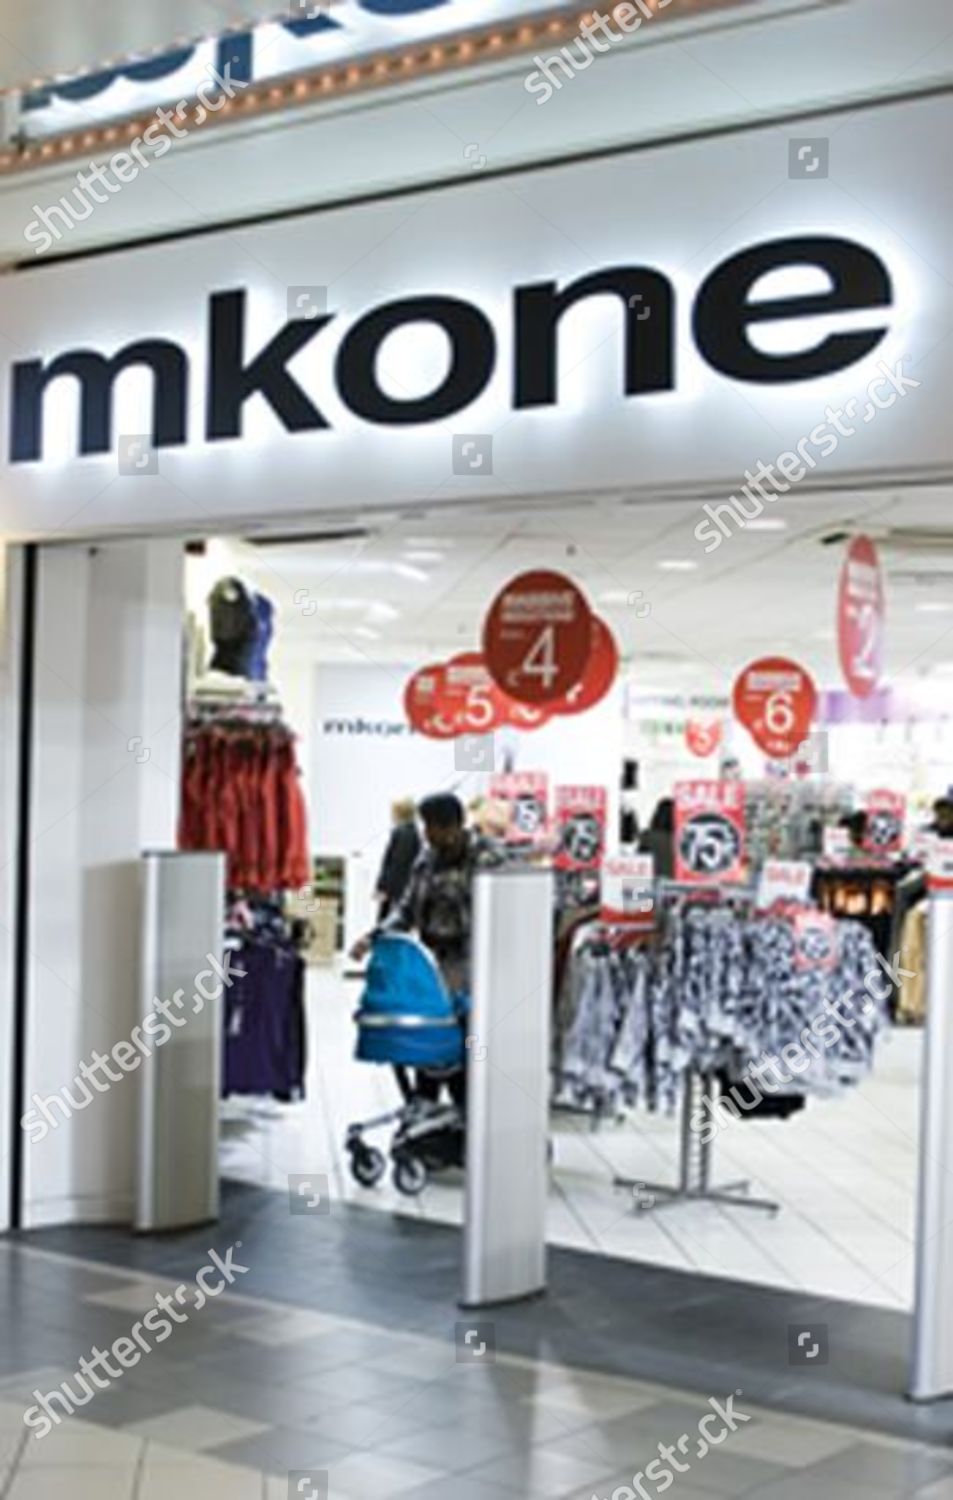 mk one clothing